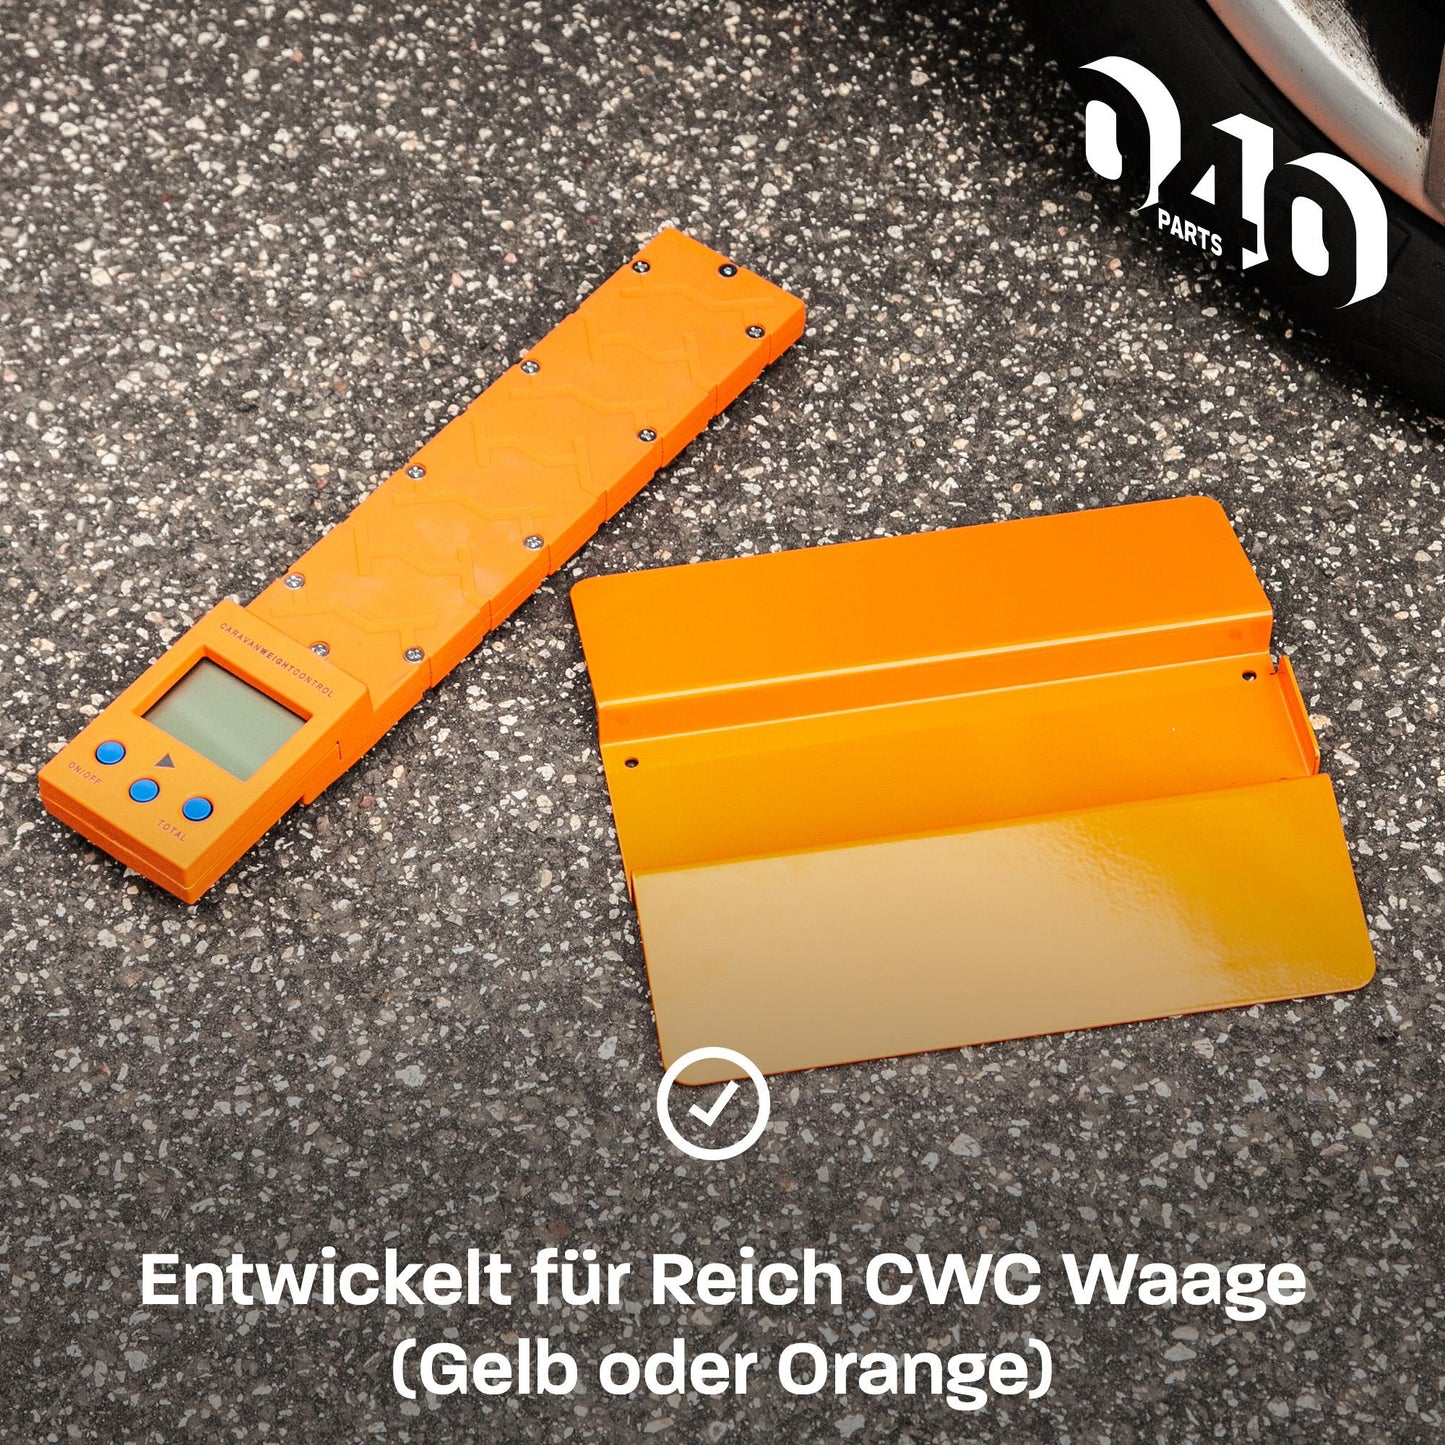 Auffahrrampe für Reich CWC Waage für sichere & präzise Messungen egal auf welchem Untergrund